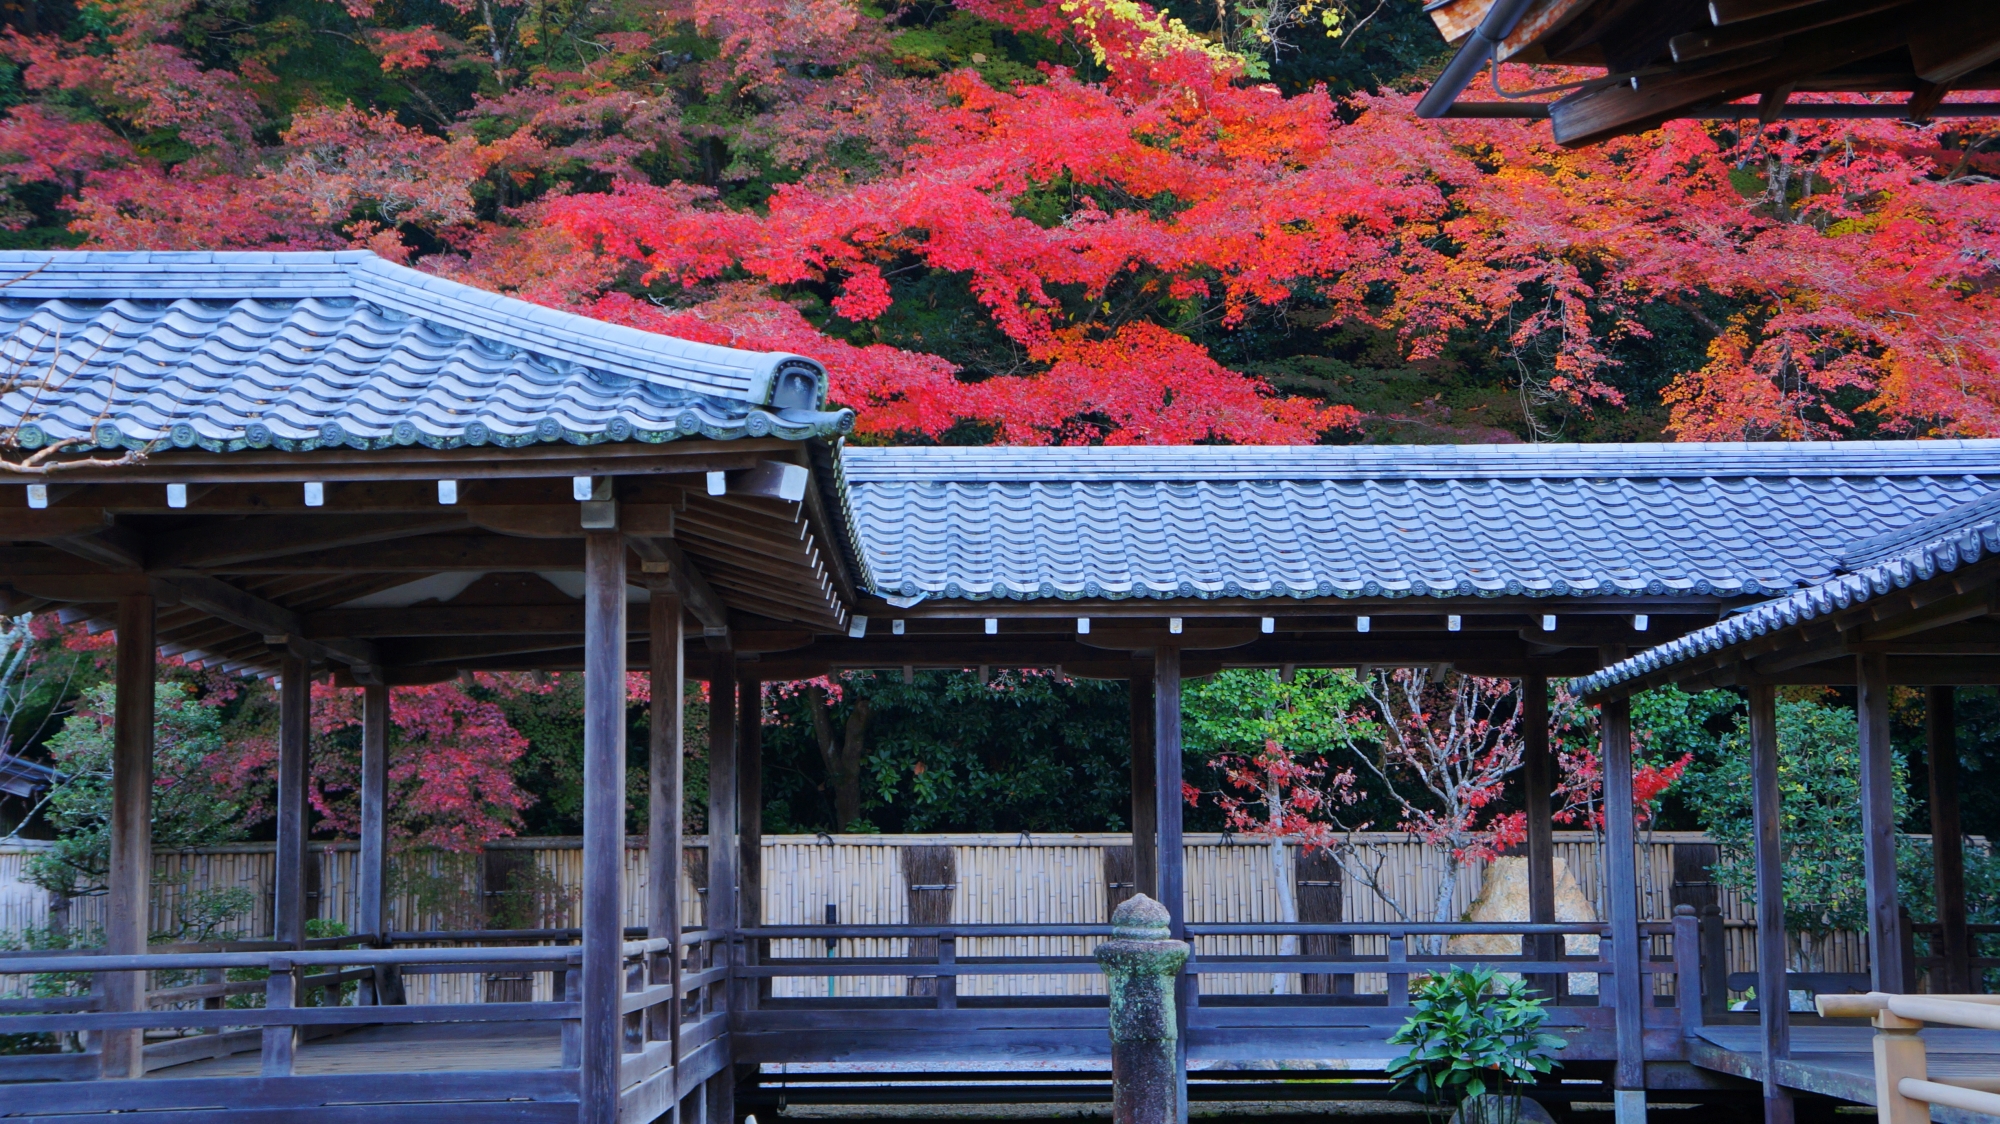 見事な彩りにつつまれる秋の南禅寺方丈六道庭